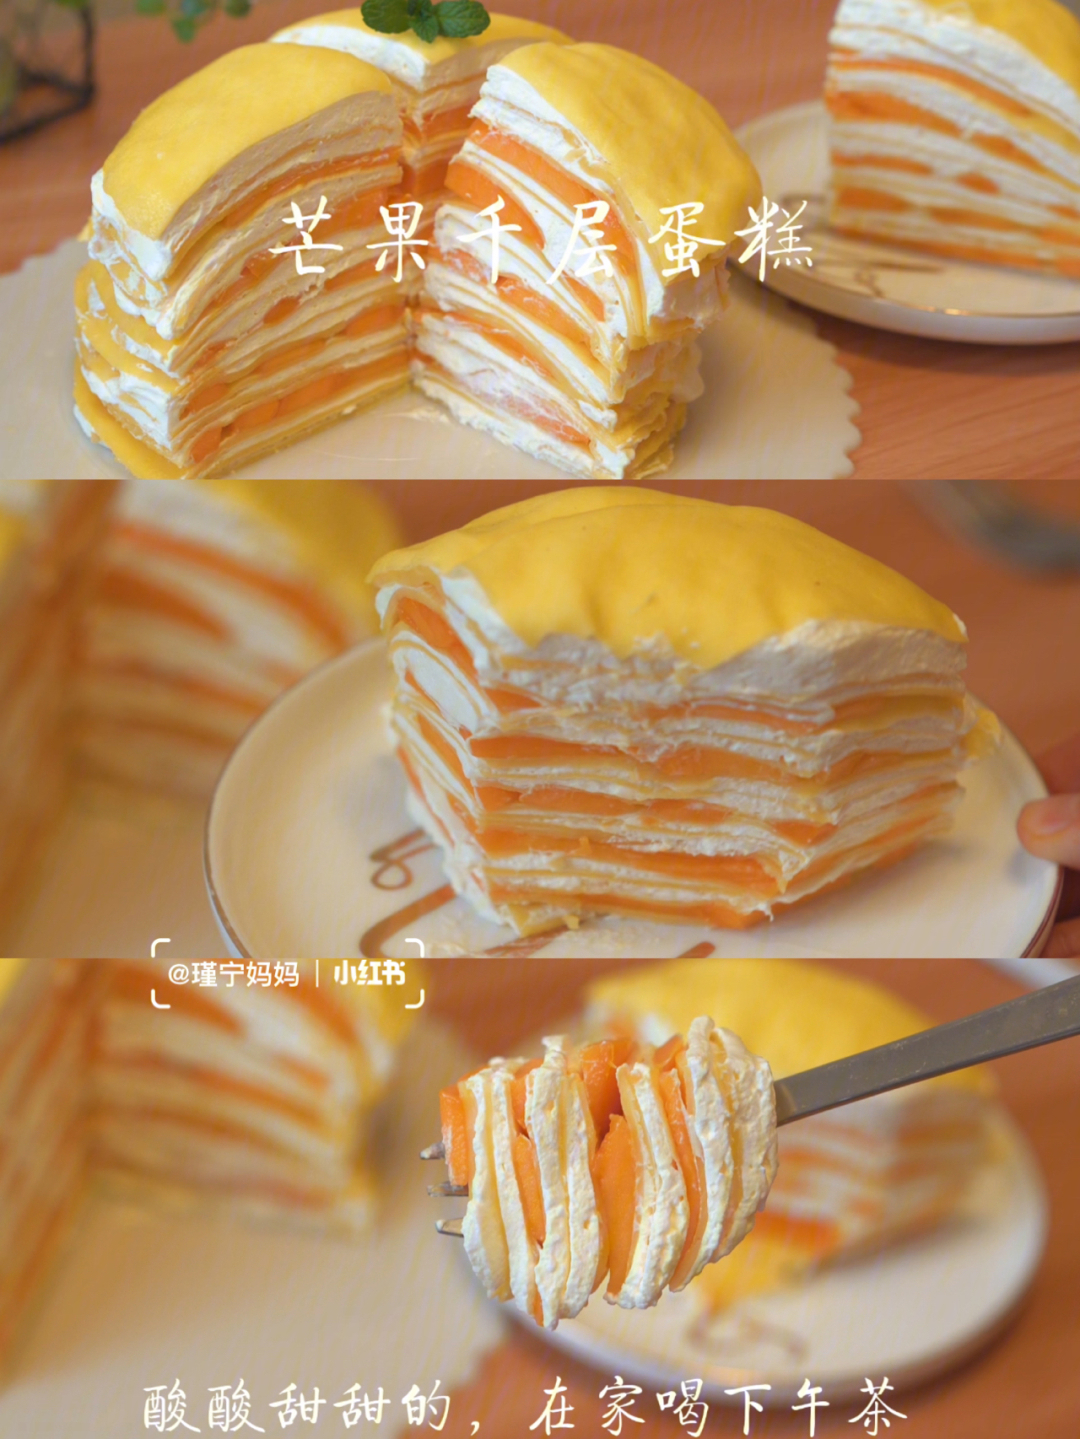 千层蛋糕的做法步骤图片